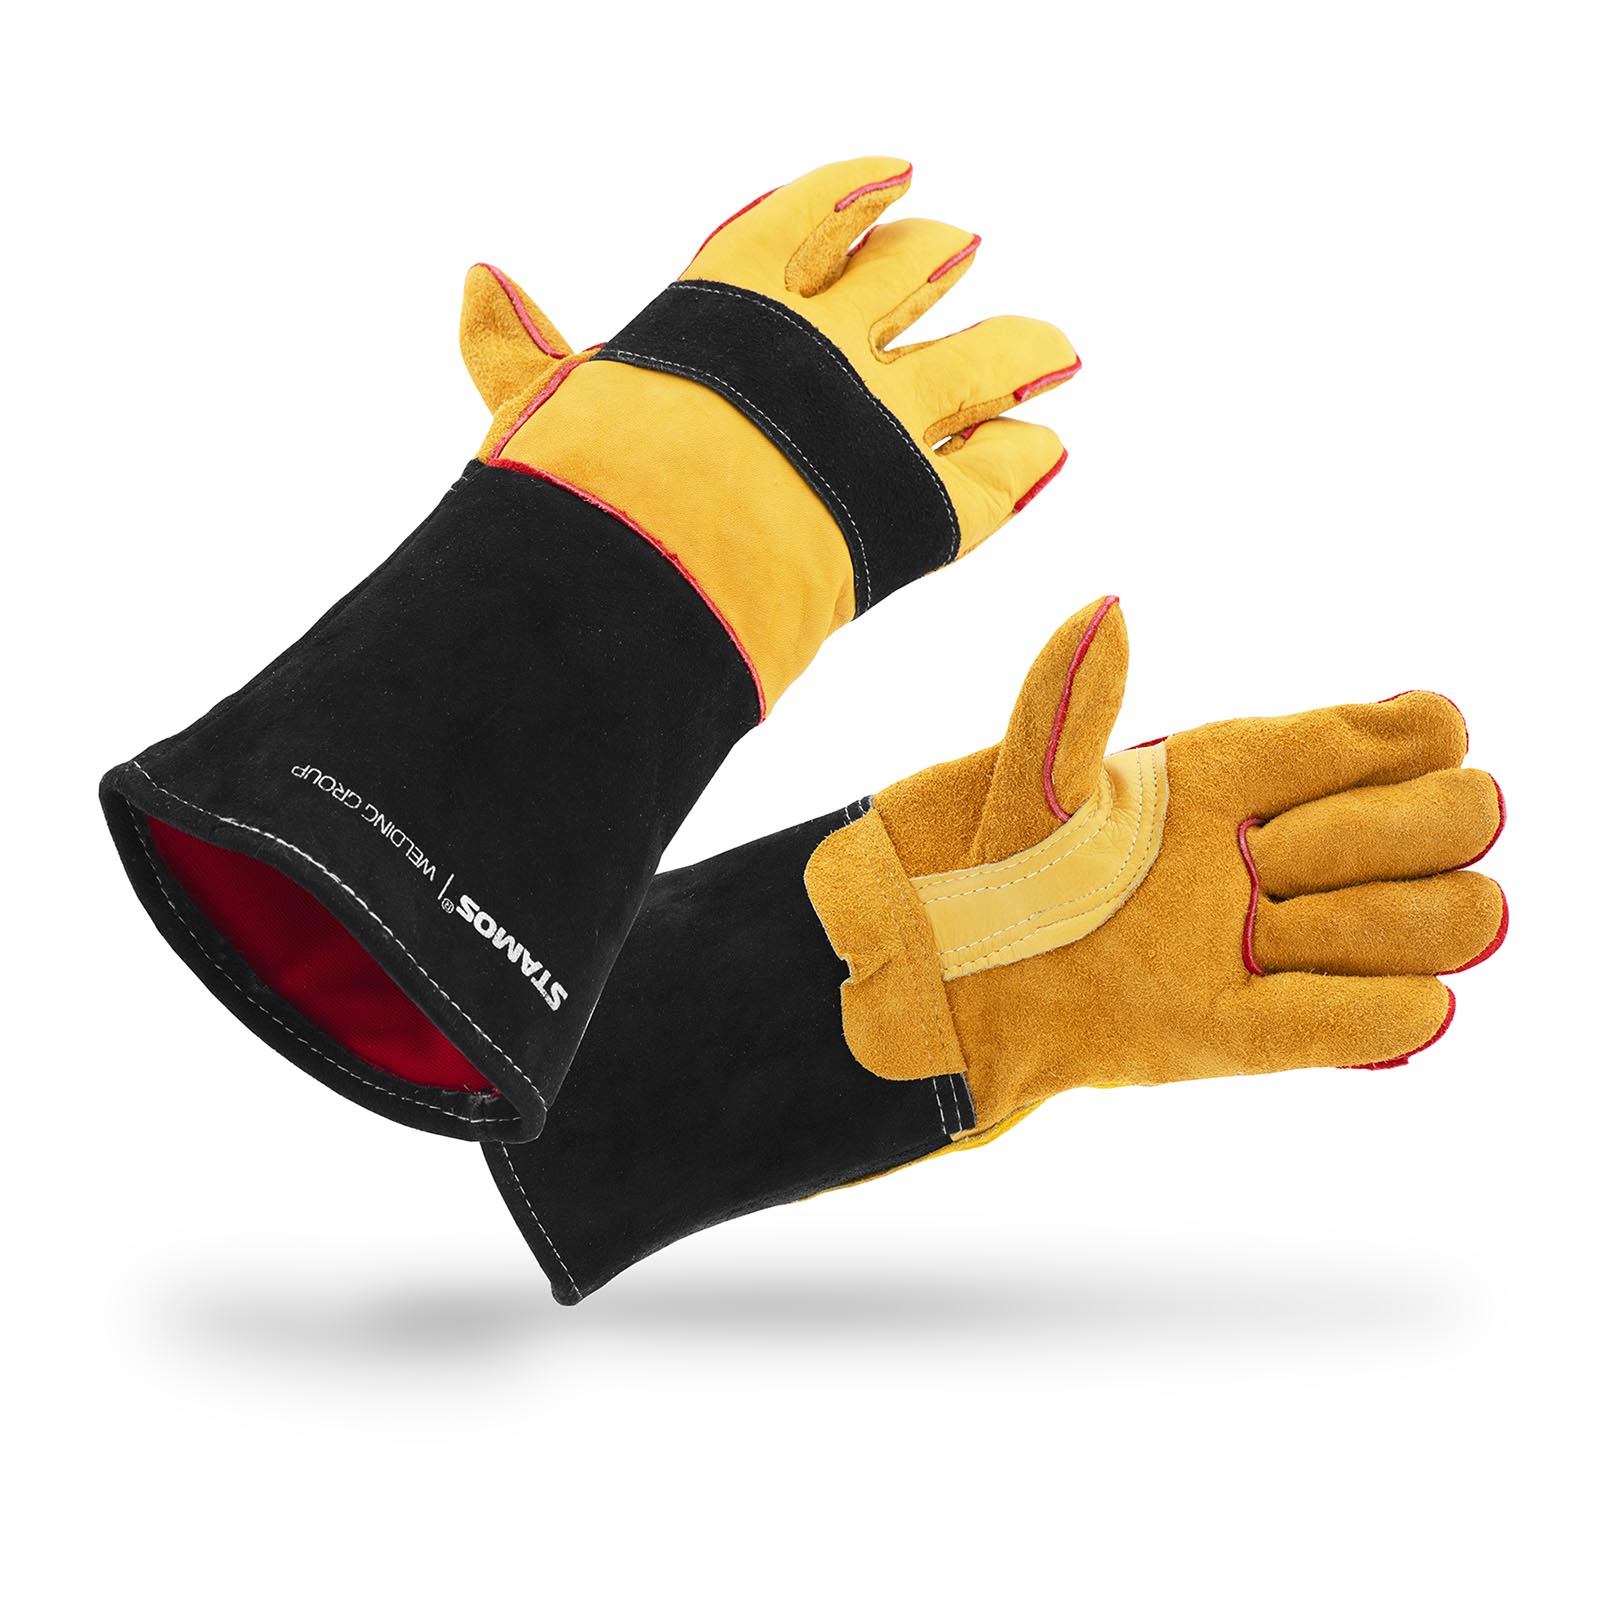 Svářečské rukavice - vel. XL